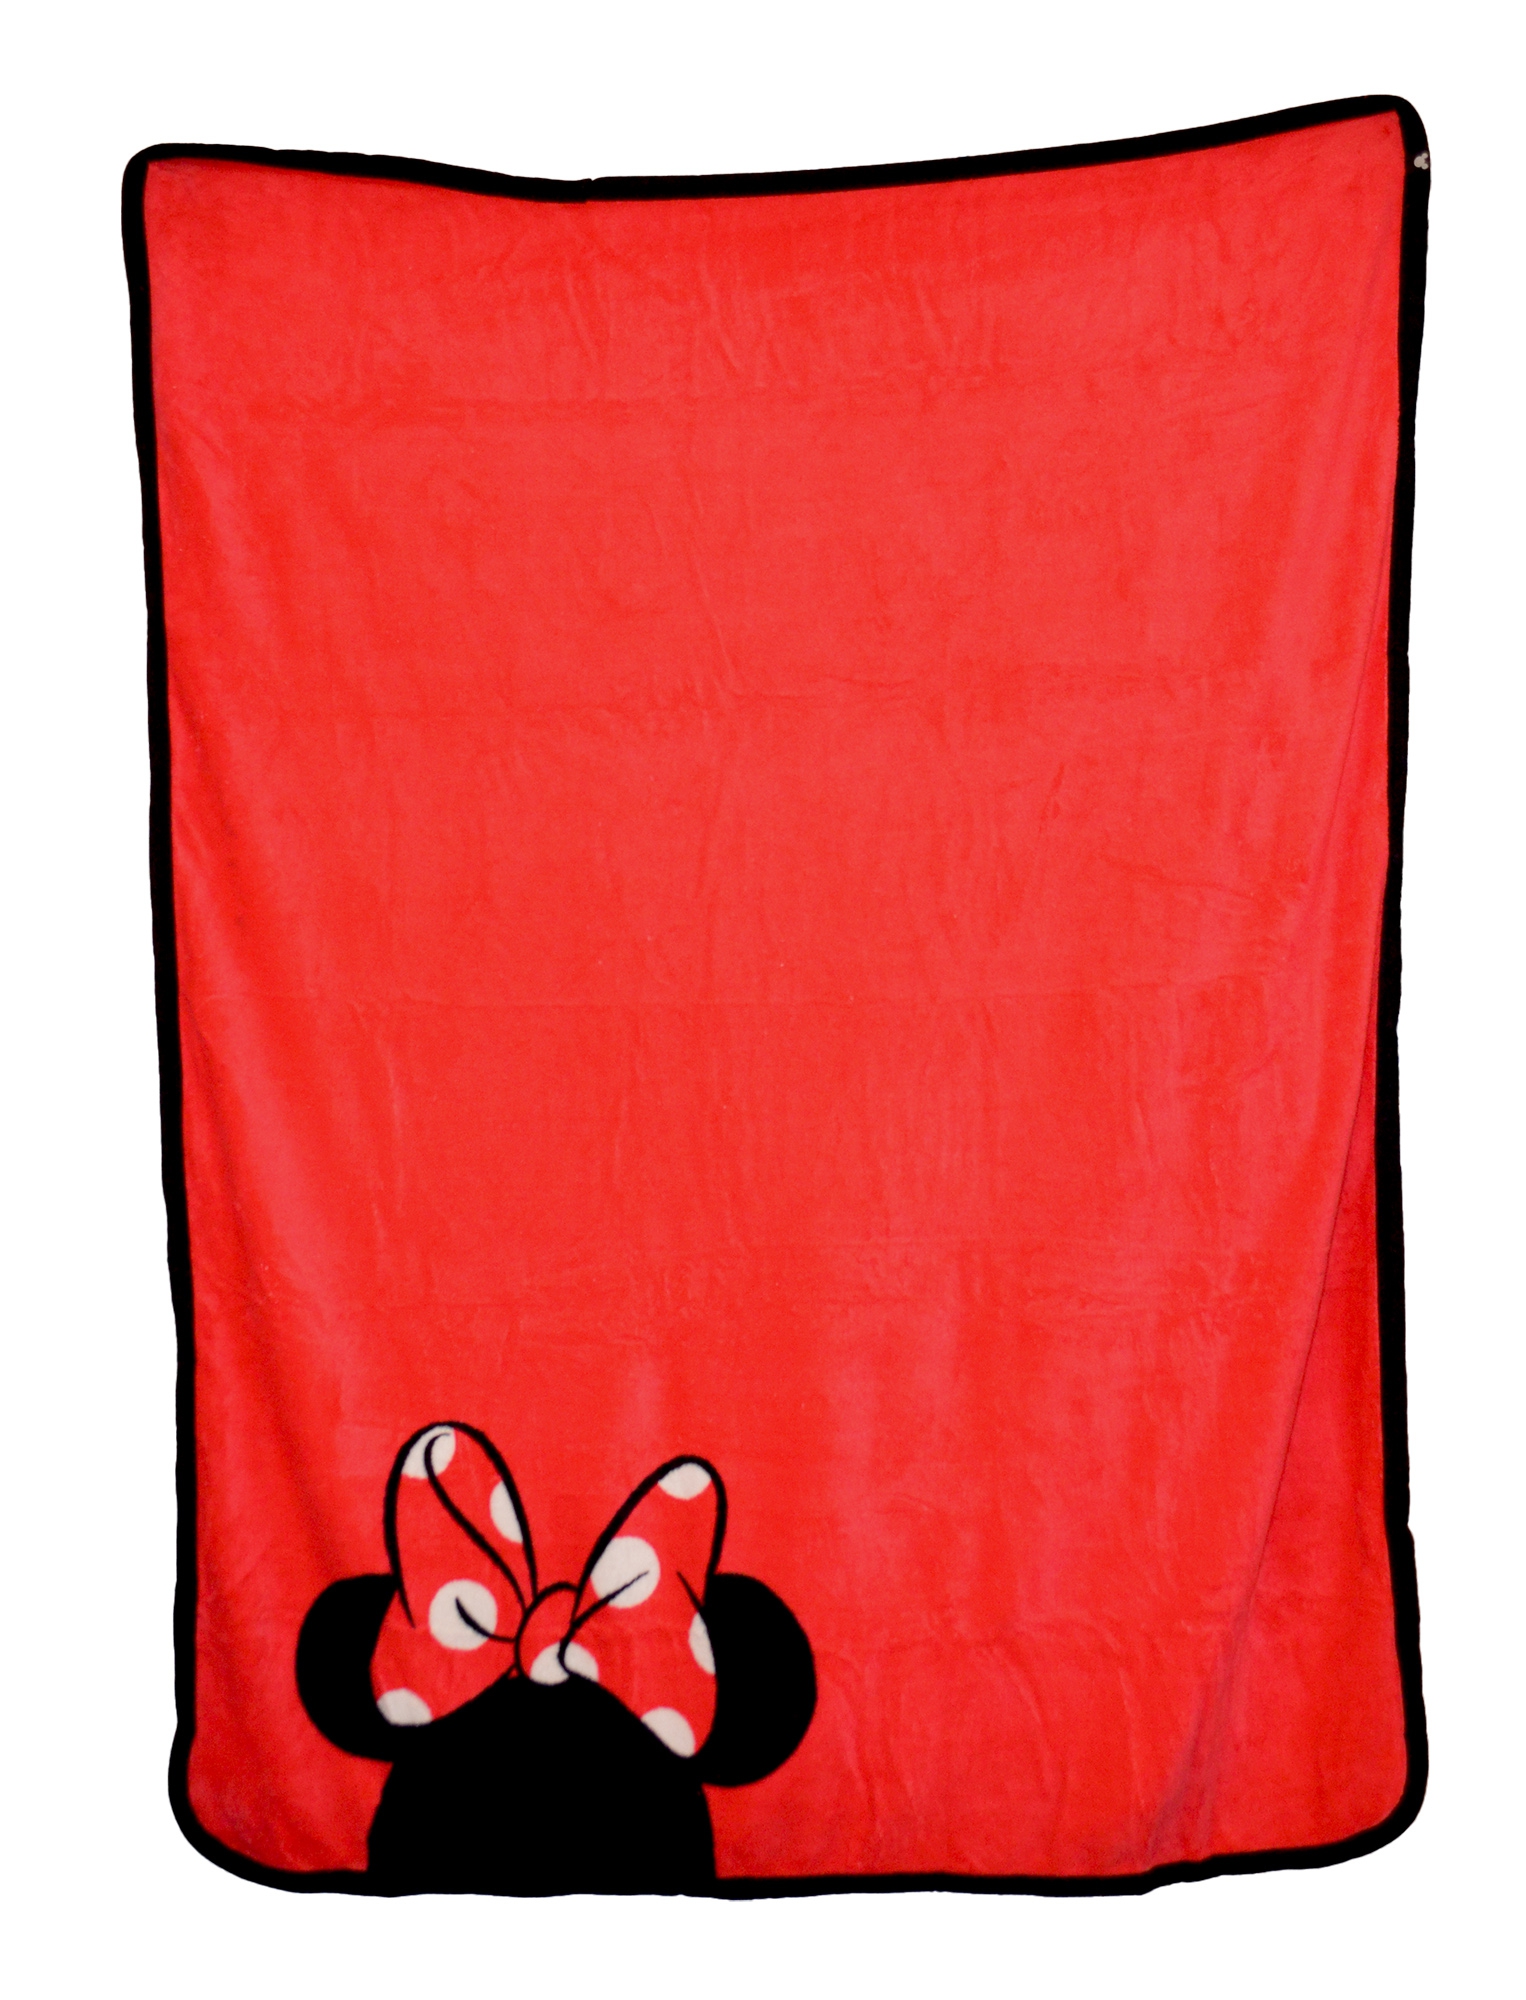 Disney Minnie Mouse 'Icon' Coral Panel Fleece Blanket Throw